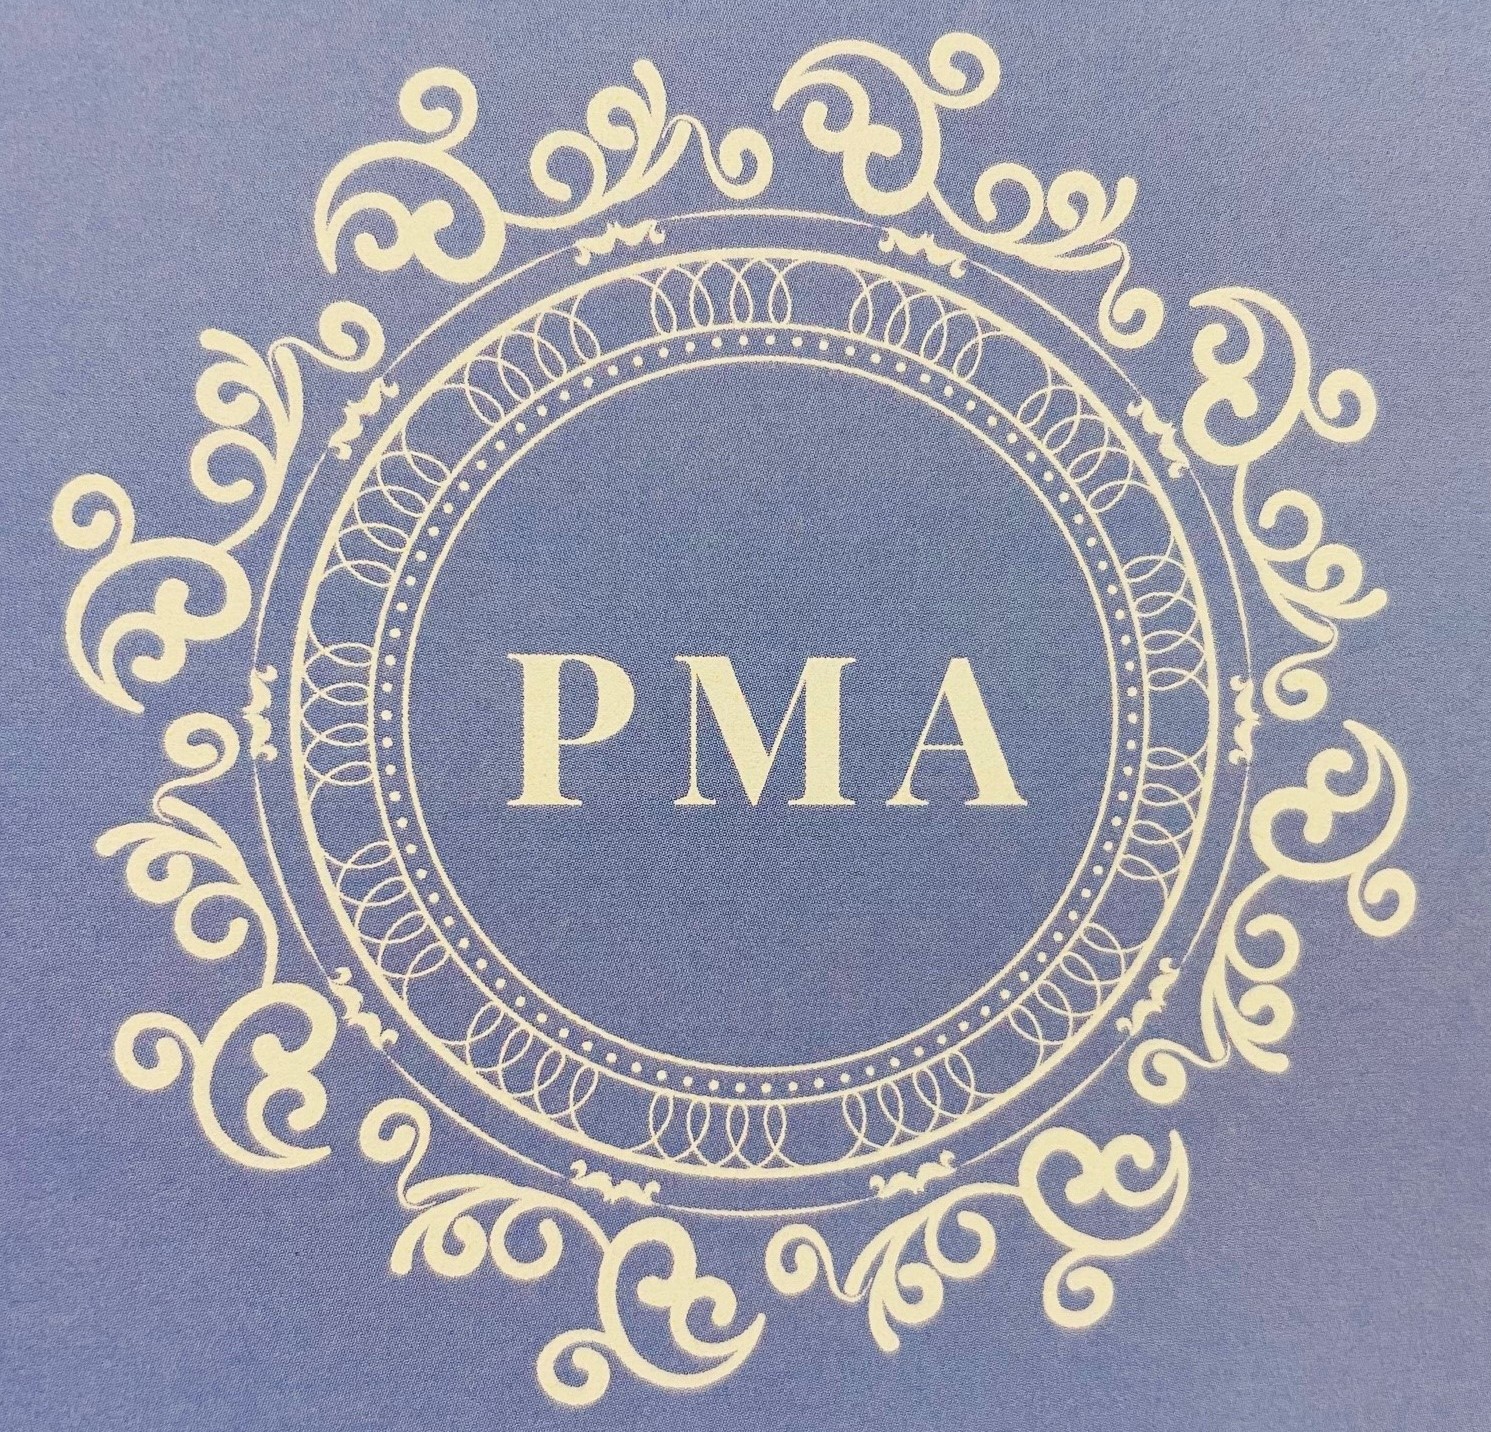 pma-logo.jpg